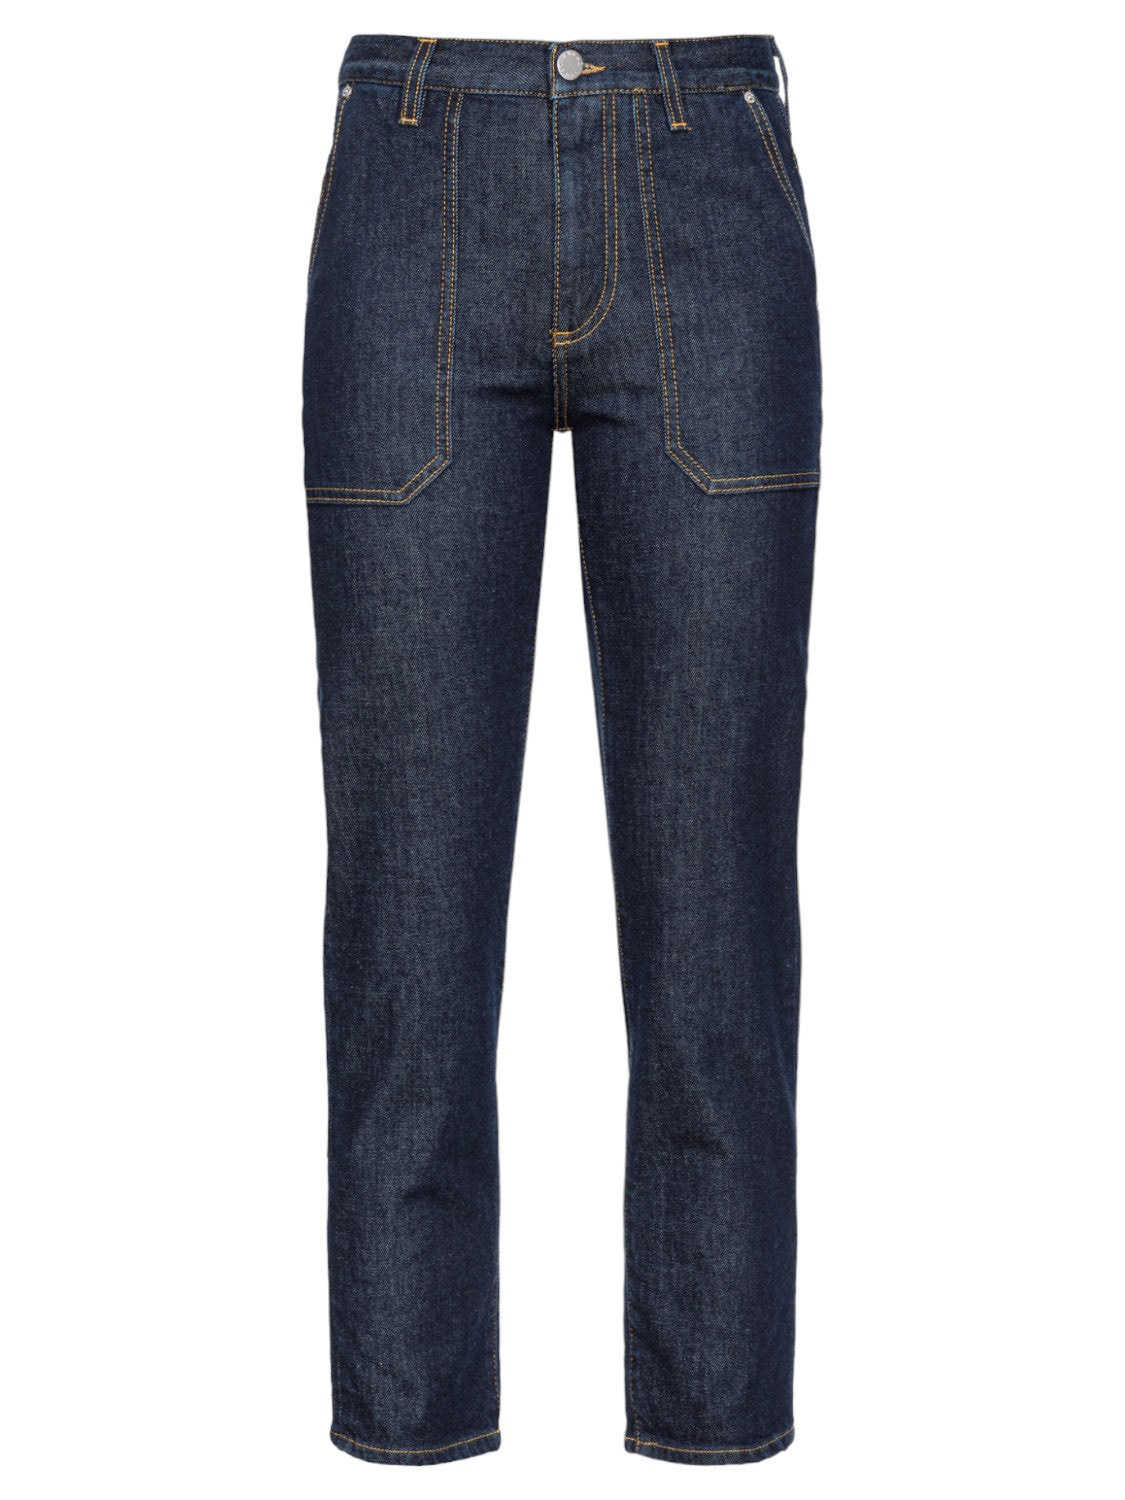 Jeans Chino in Denim Scuro Blu Modello Cloe-Pinko-Jeans-Vittorio Citro Boutique